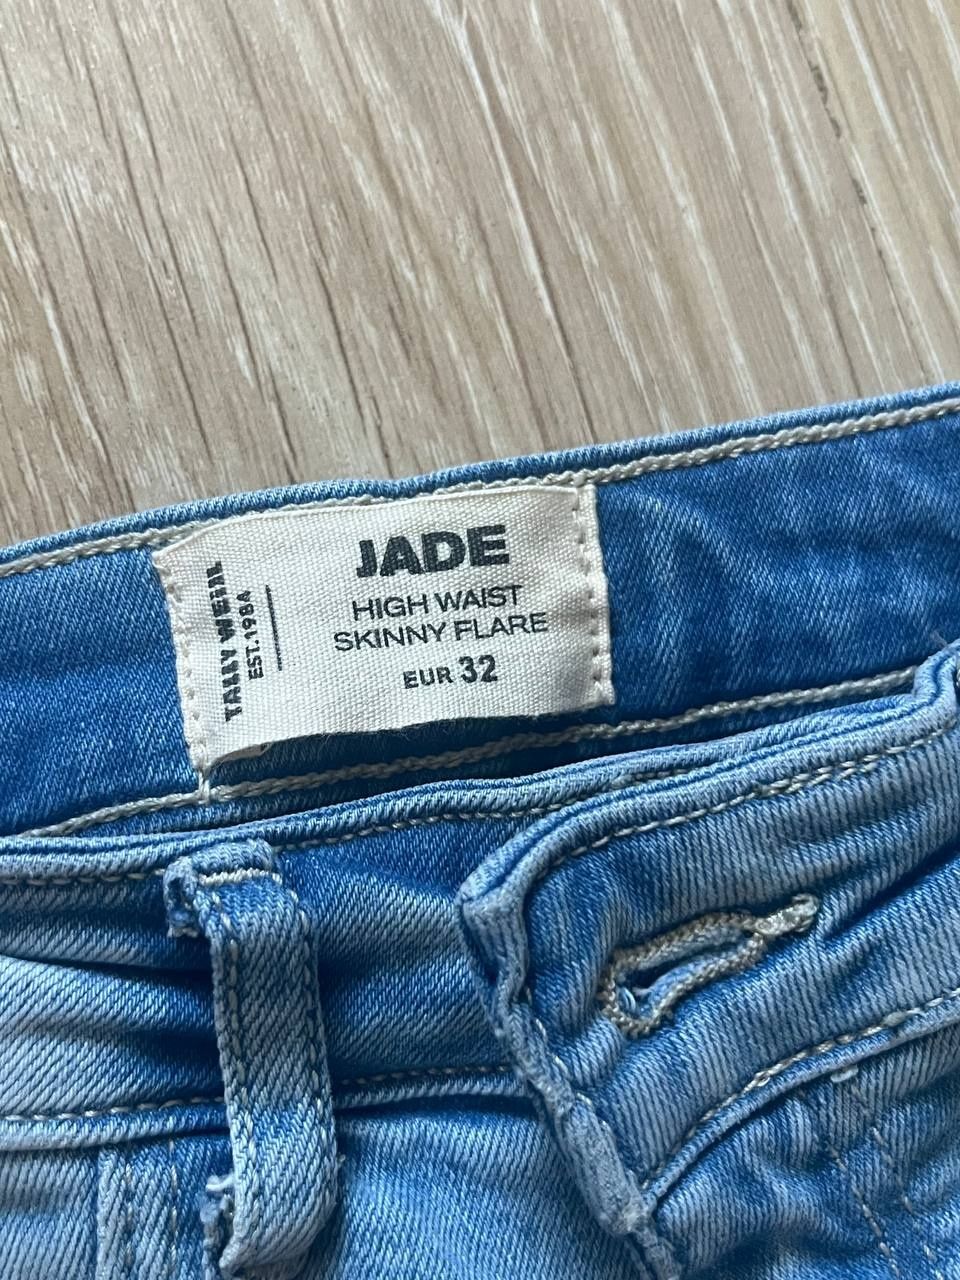 Продам джинсы, размер 32